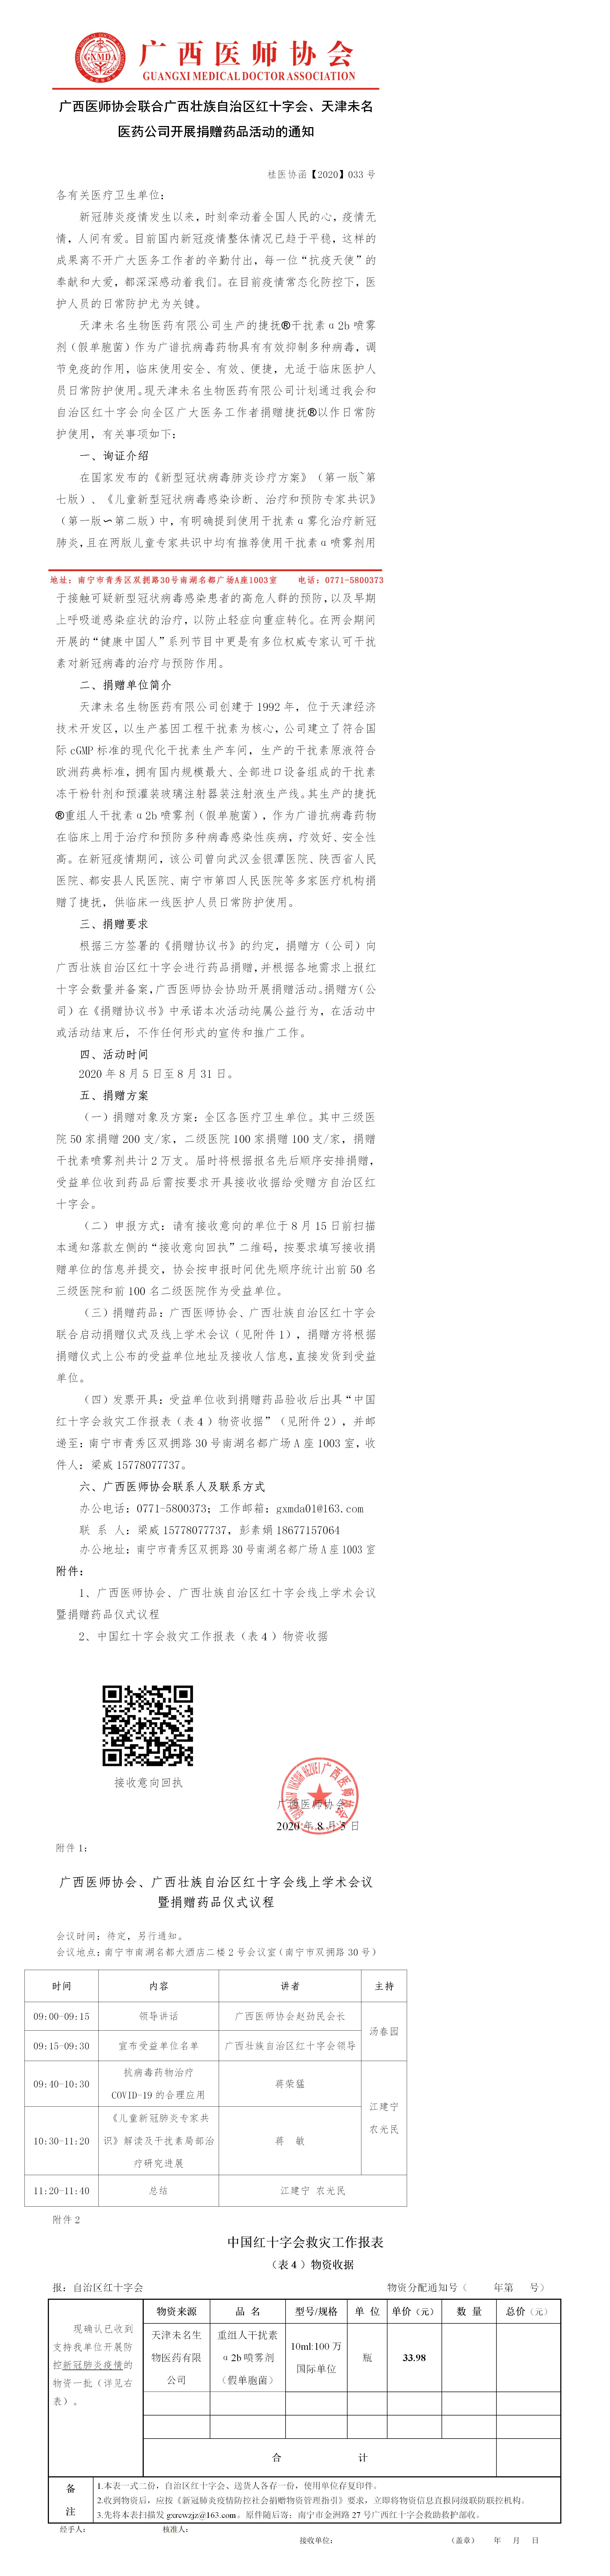 【2020】033号 600cc全讯白菜联合广西红十字会、天津未名医药公司开展捐赠药品活动的通知-已审核20200804(1).jpg